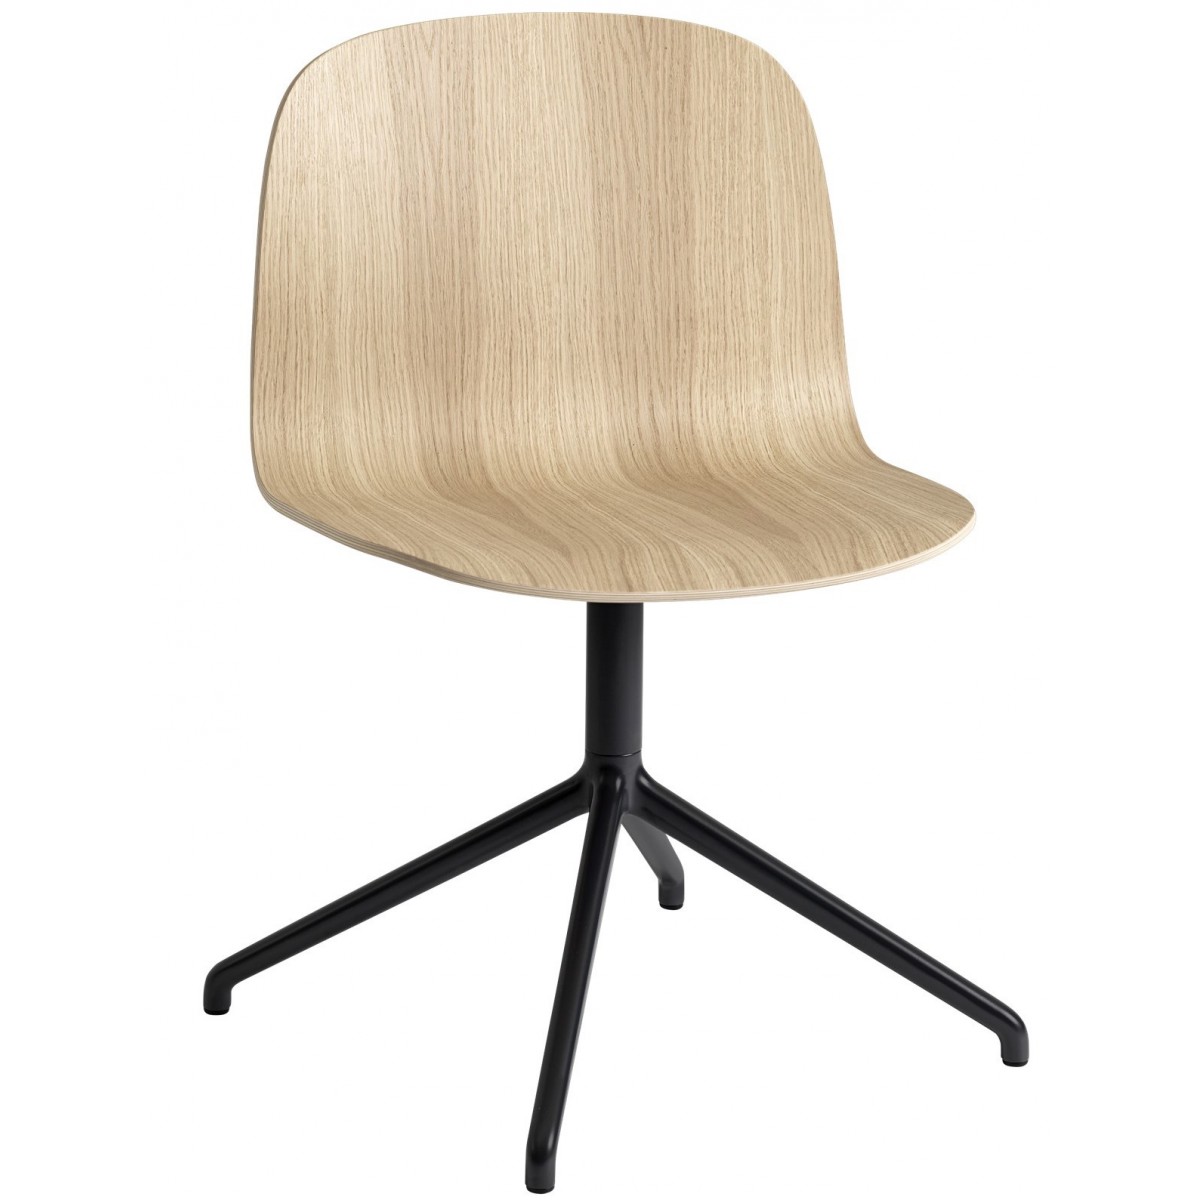 oak, no castor - Visu Wide chair swivel base